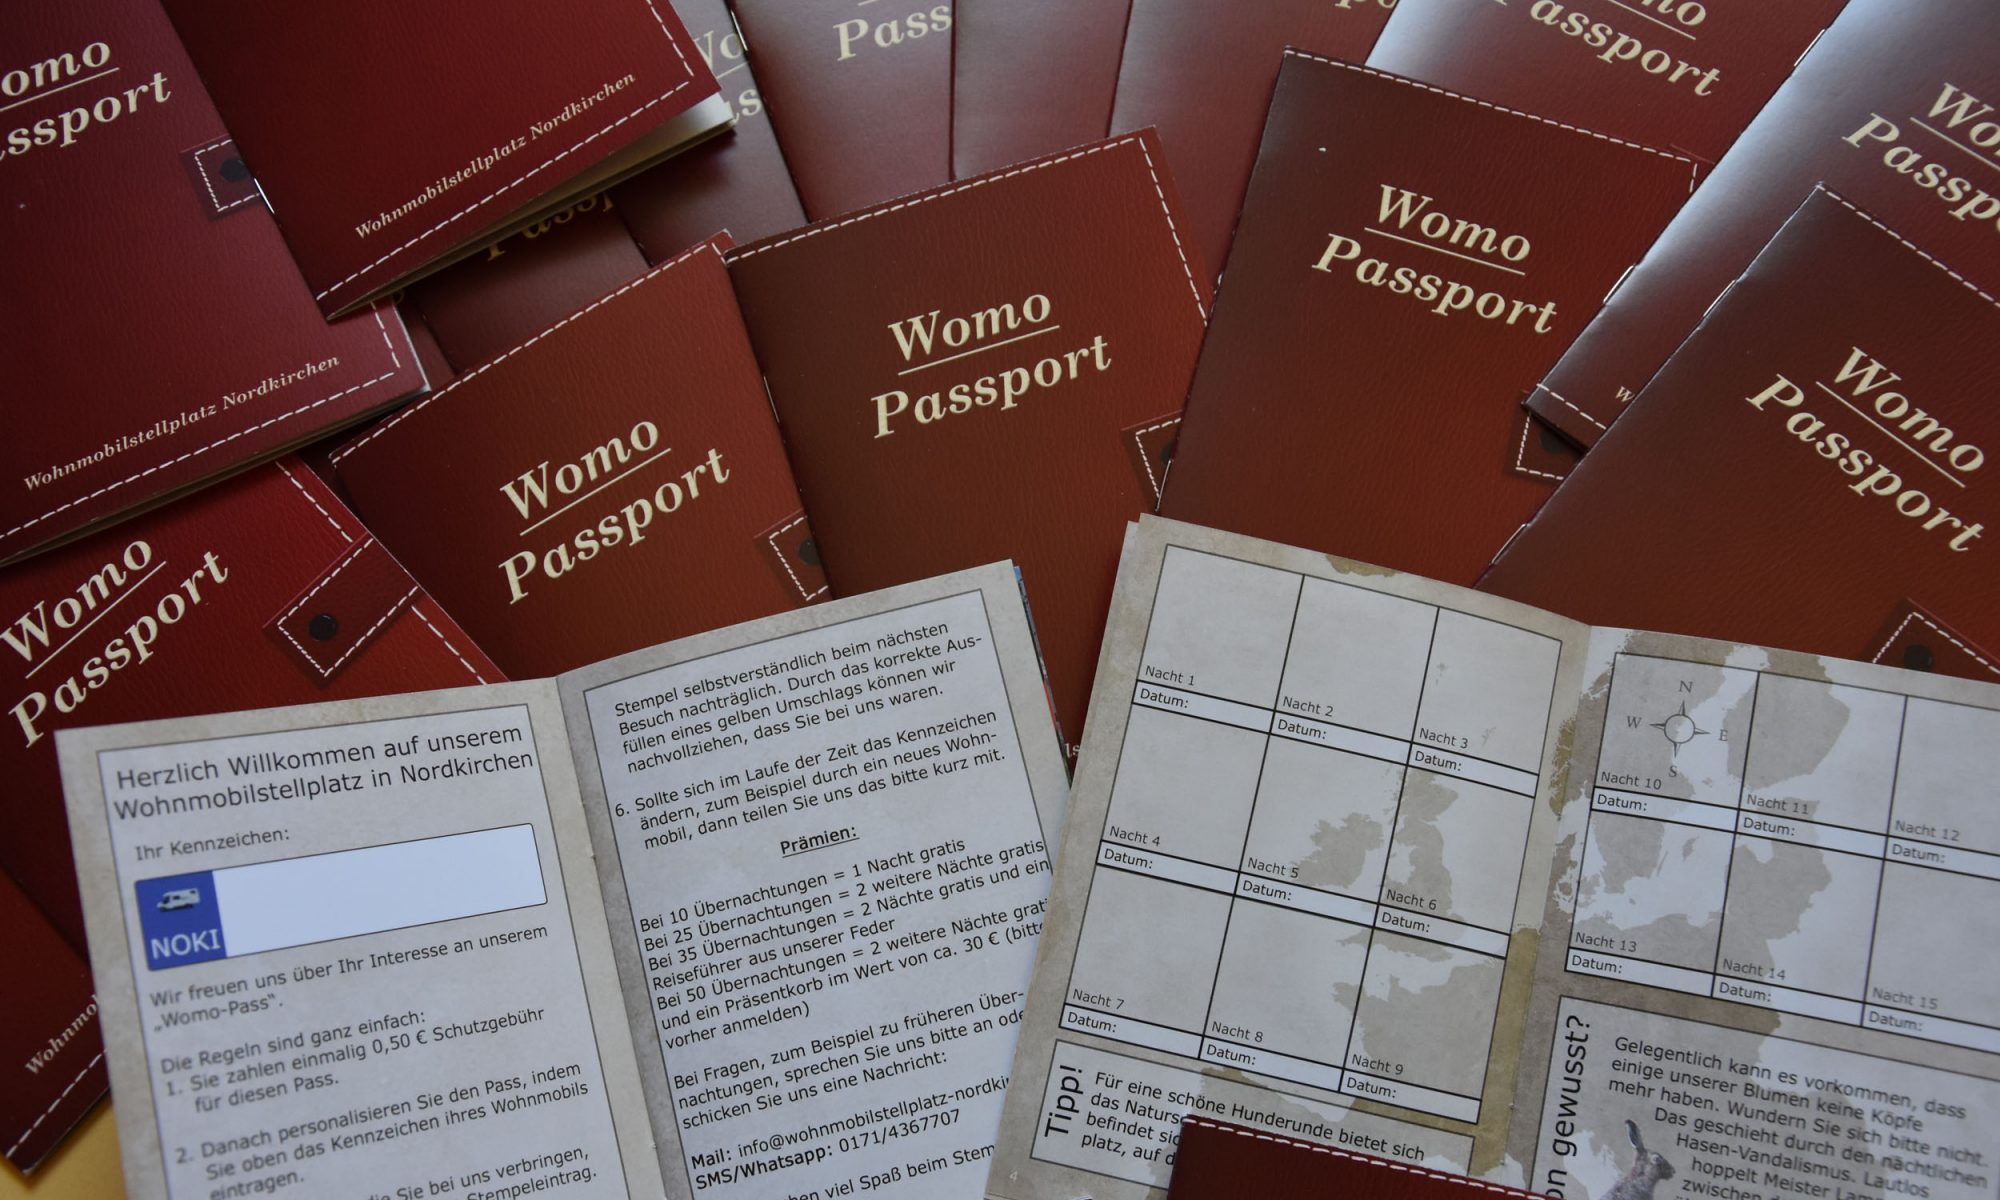 Womo-Passport